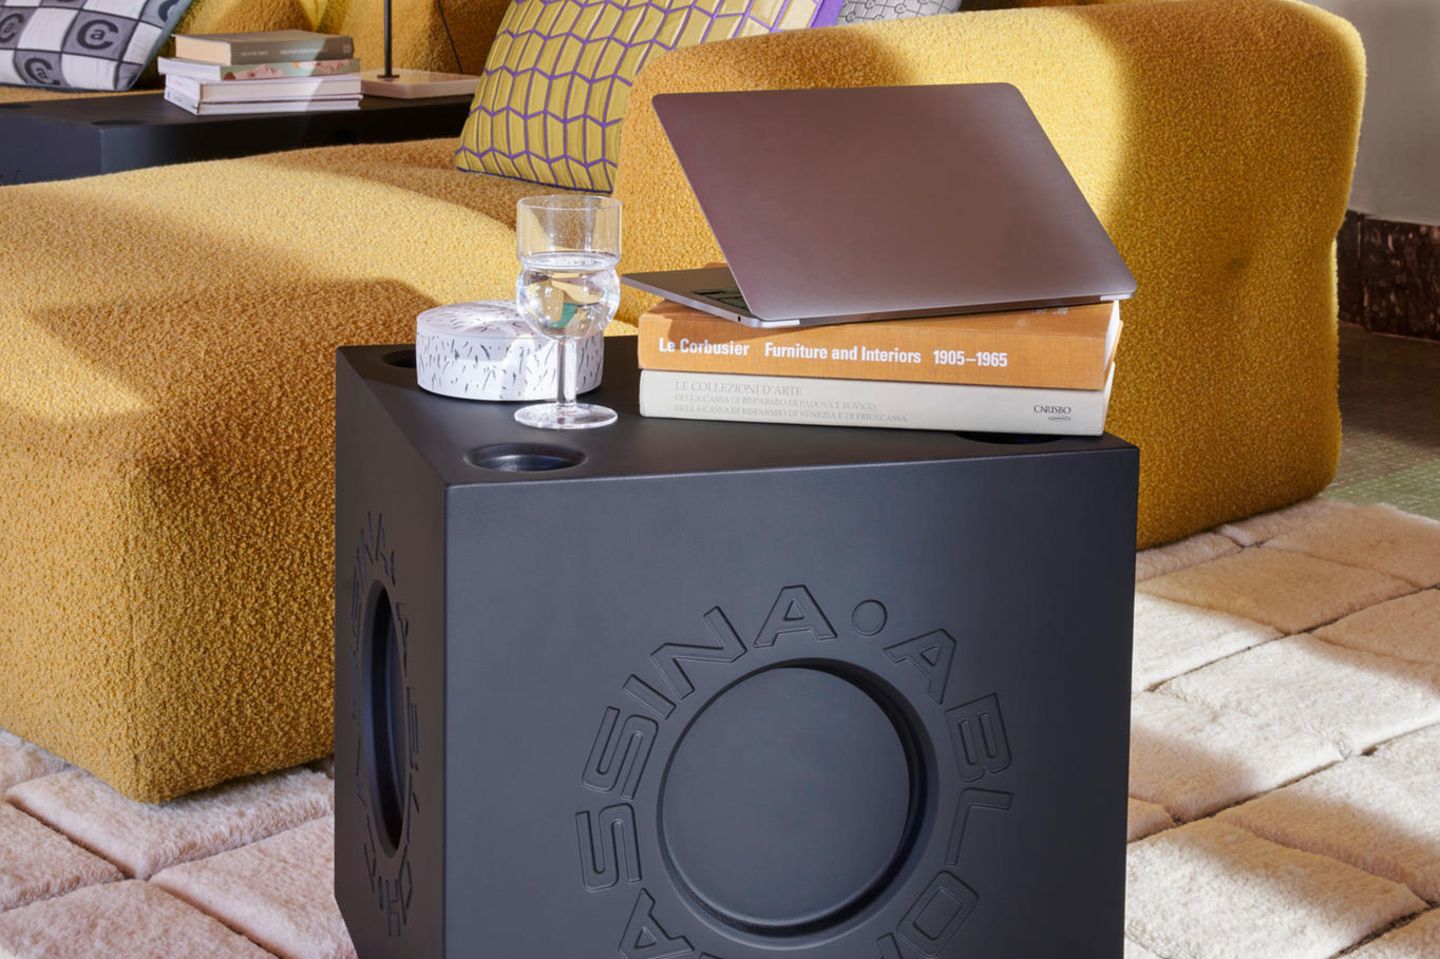 Schwarzes Wohn-Accessoire Modular Imagination von Cassina mit Glas und Laptop vor gelbem Sofa